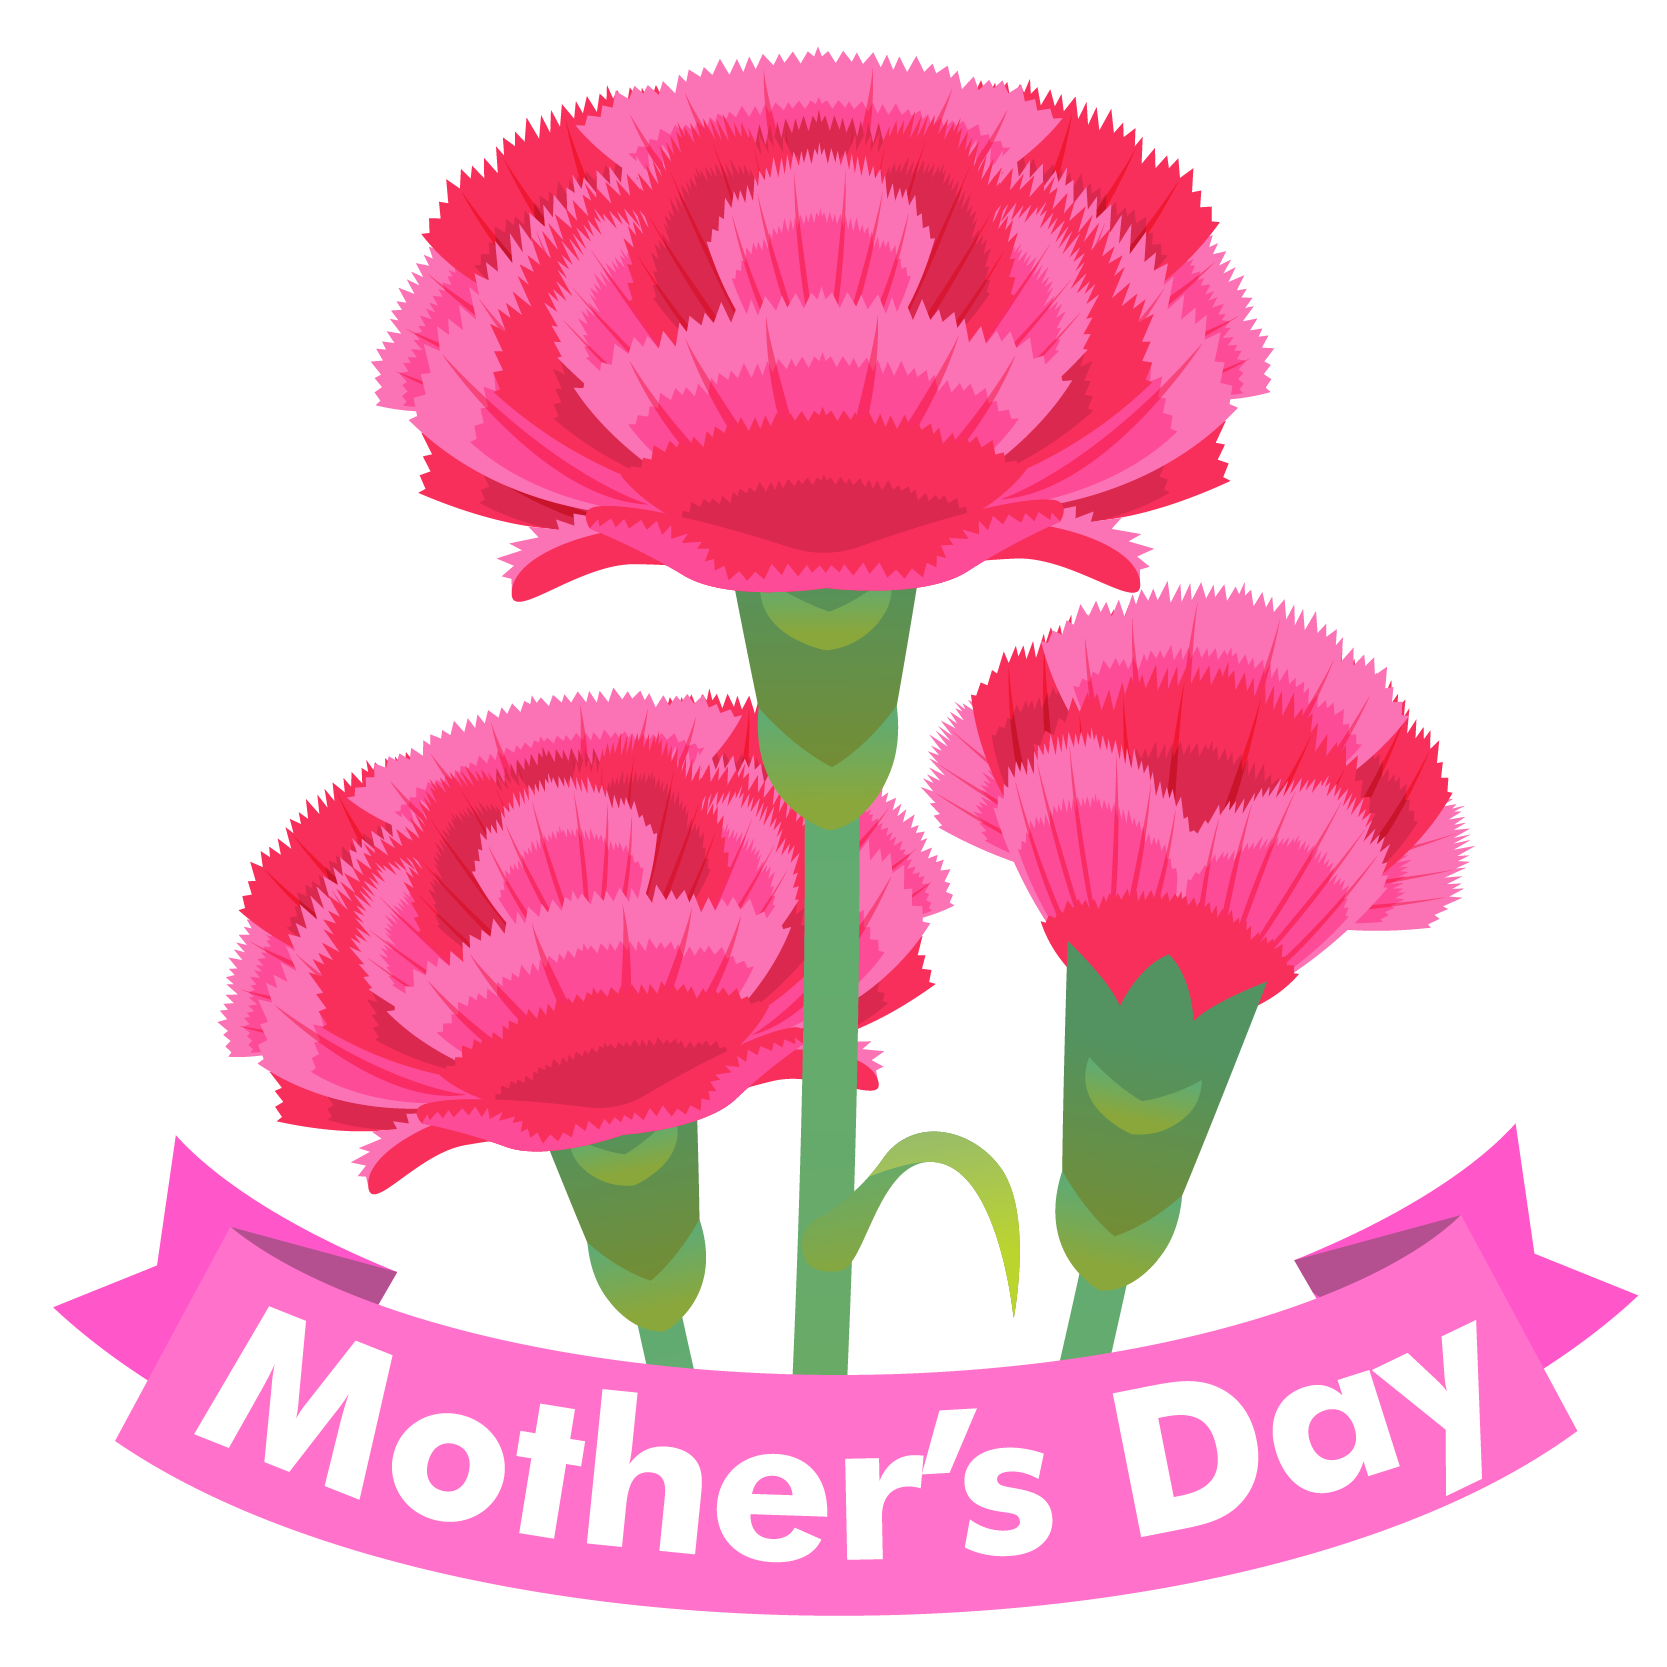 商用フリー 無料イラスト 5月母の日 カーネーション Mothersday012 商用ok フリー素材集 ナイスなイラスト